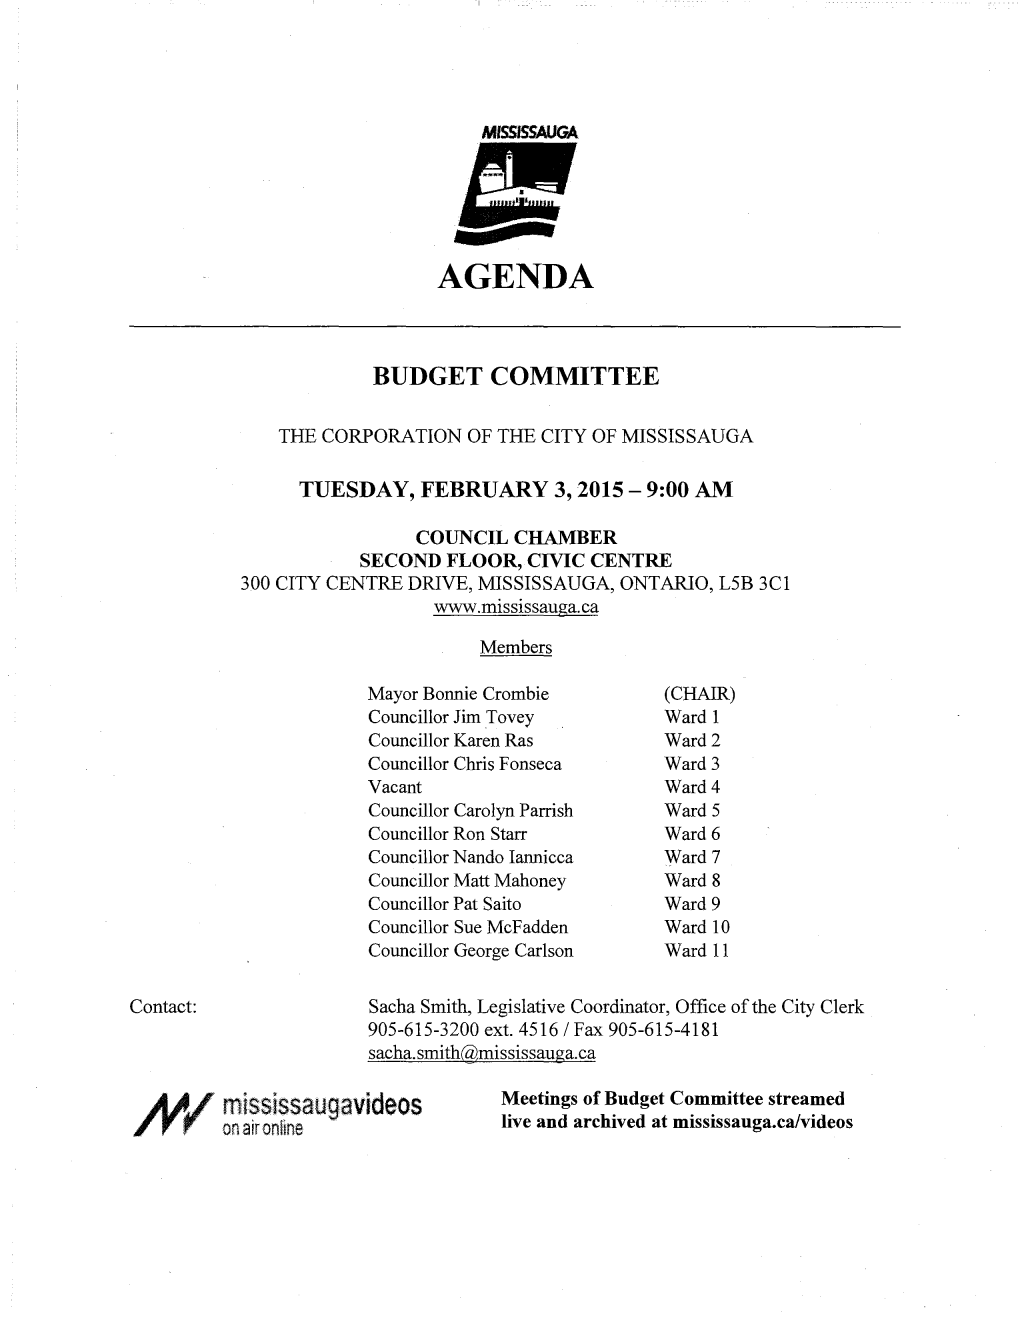 Budget Committee Agenda